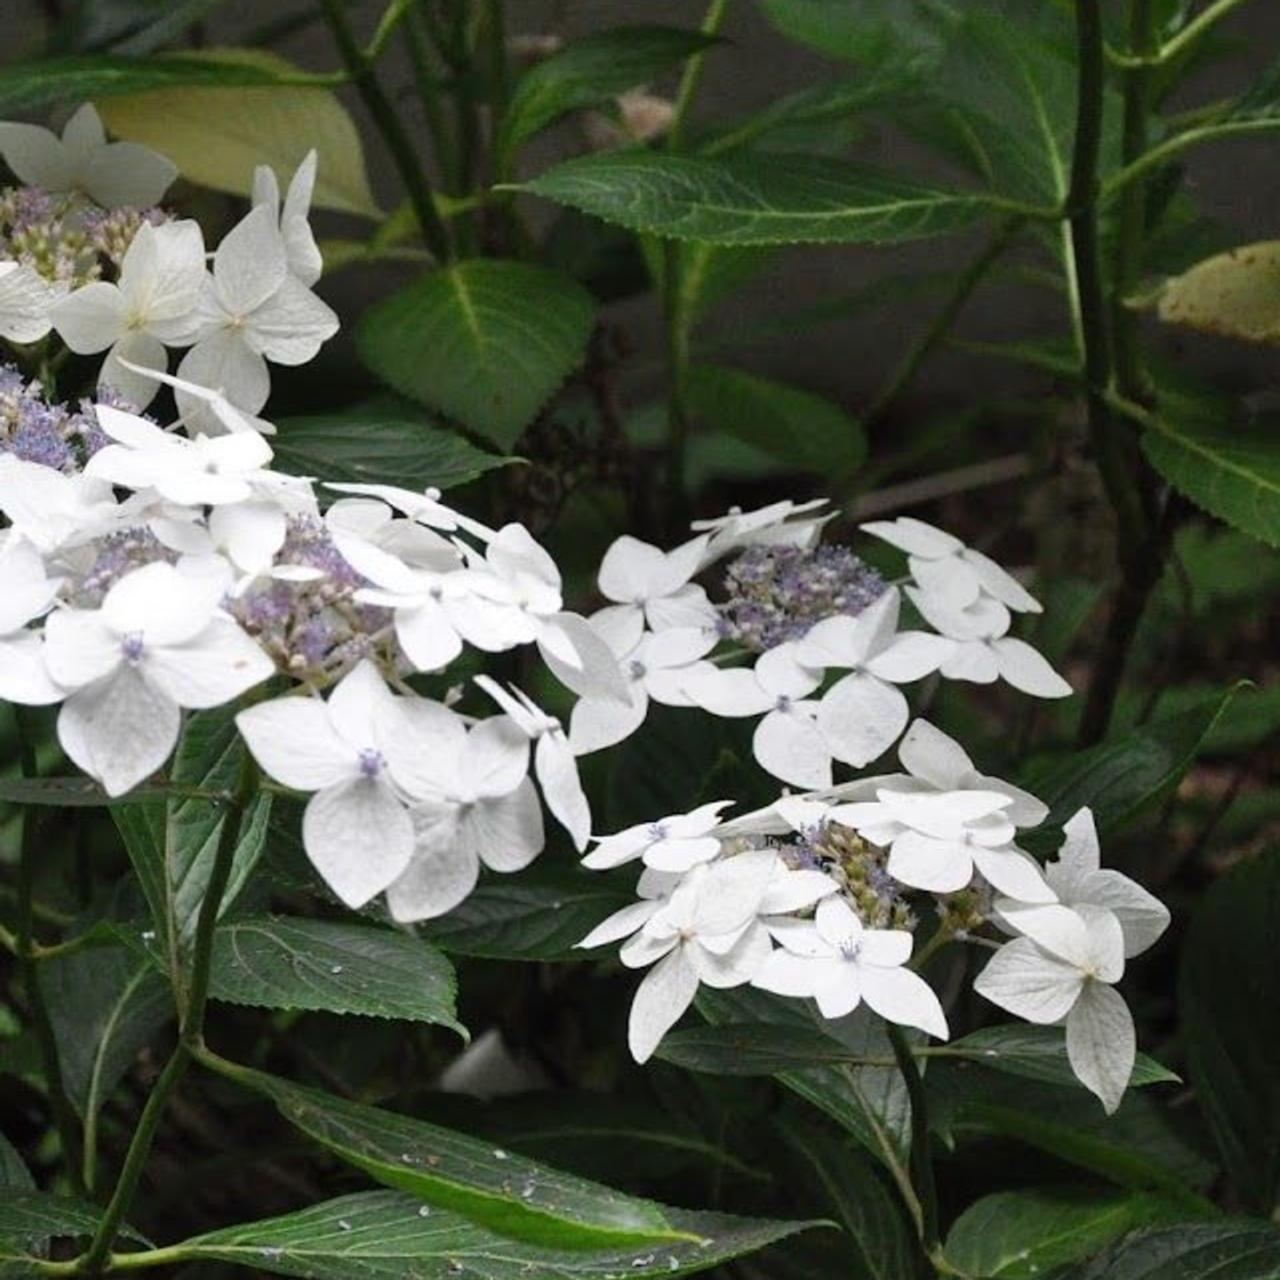 hydrangea macr. 'lanarth white' - kaufen sie pflanzen bei coolplants